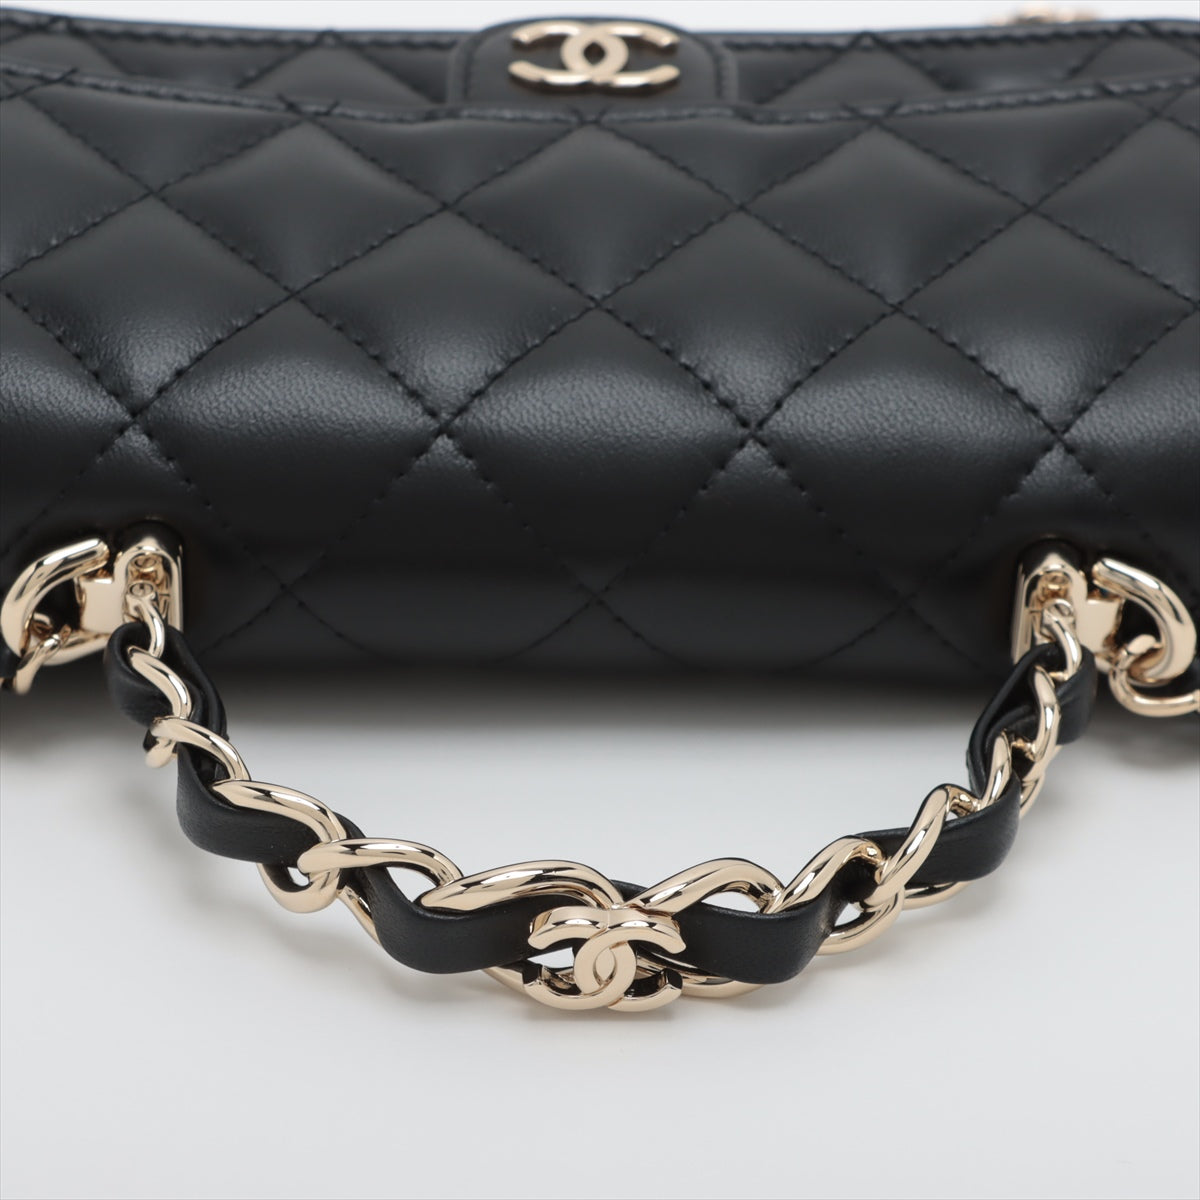 Chanel Matelasse Lambskin Chain wallet 2WAY Black Gold Metal fittings